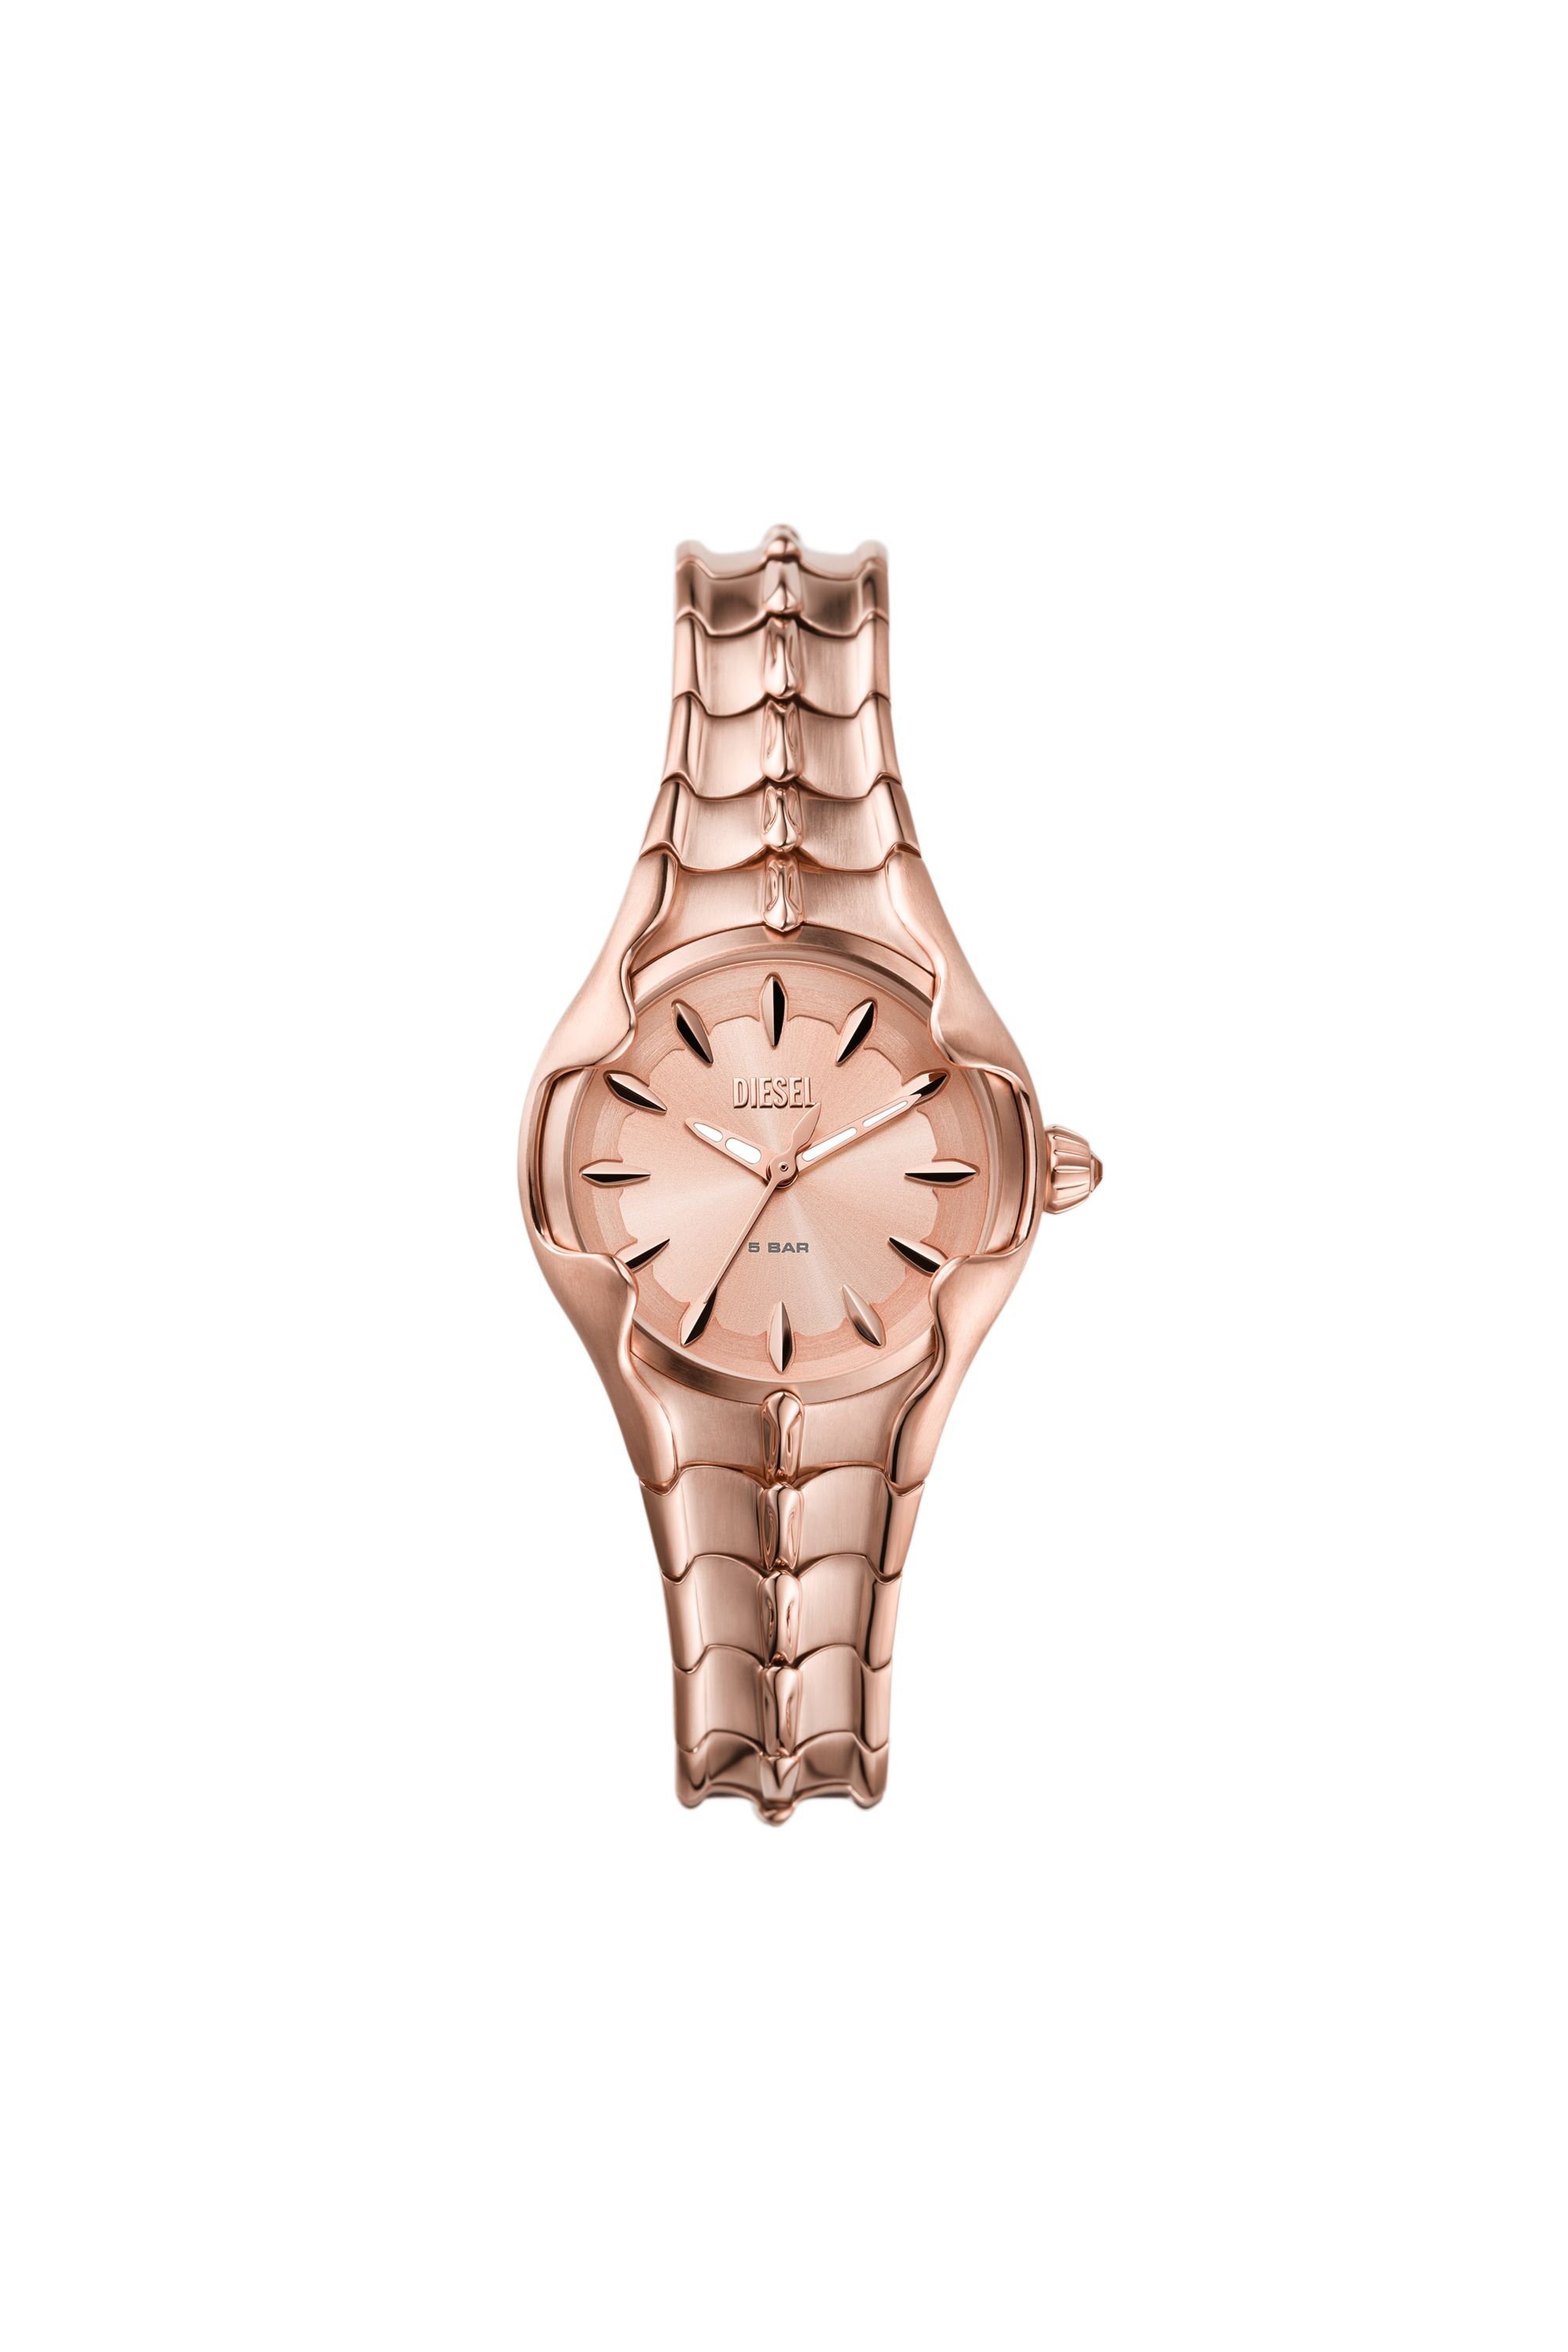 Diesel - Reloj Vert de acero inoxidable en tono dorado rosa con movimiento de tres agujas - Relojes - Mujer - Rosa